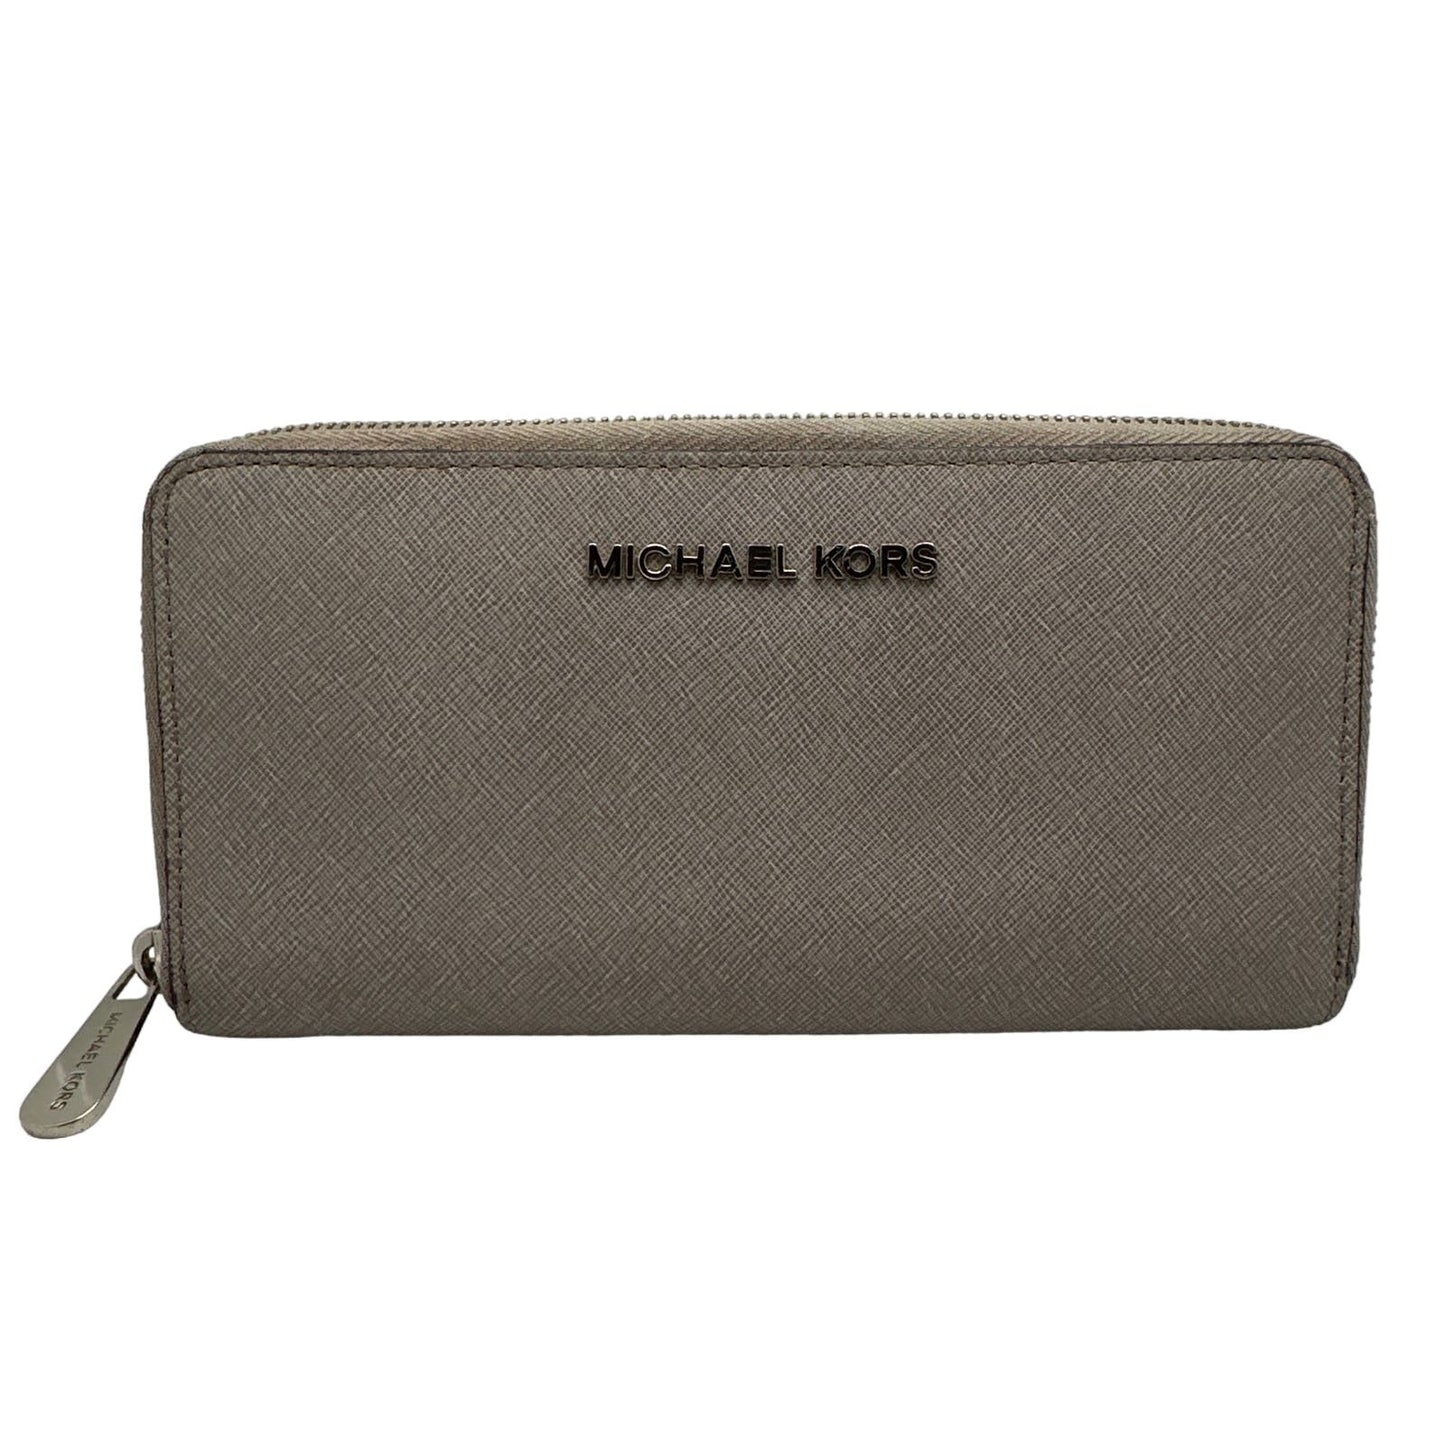 MICHAEL KORS Zip Around Wallet